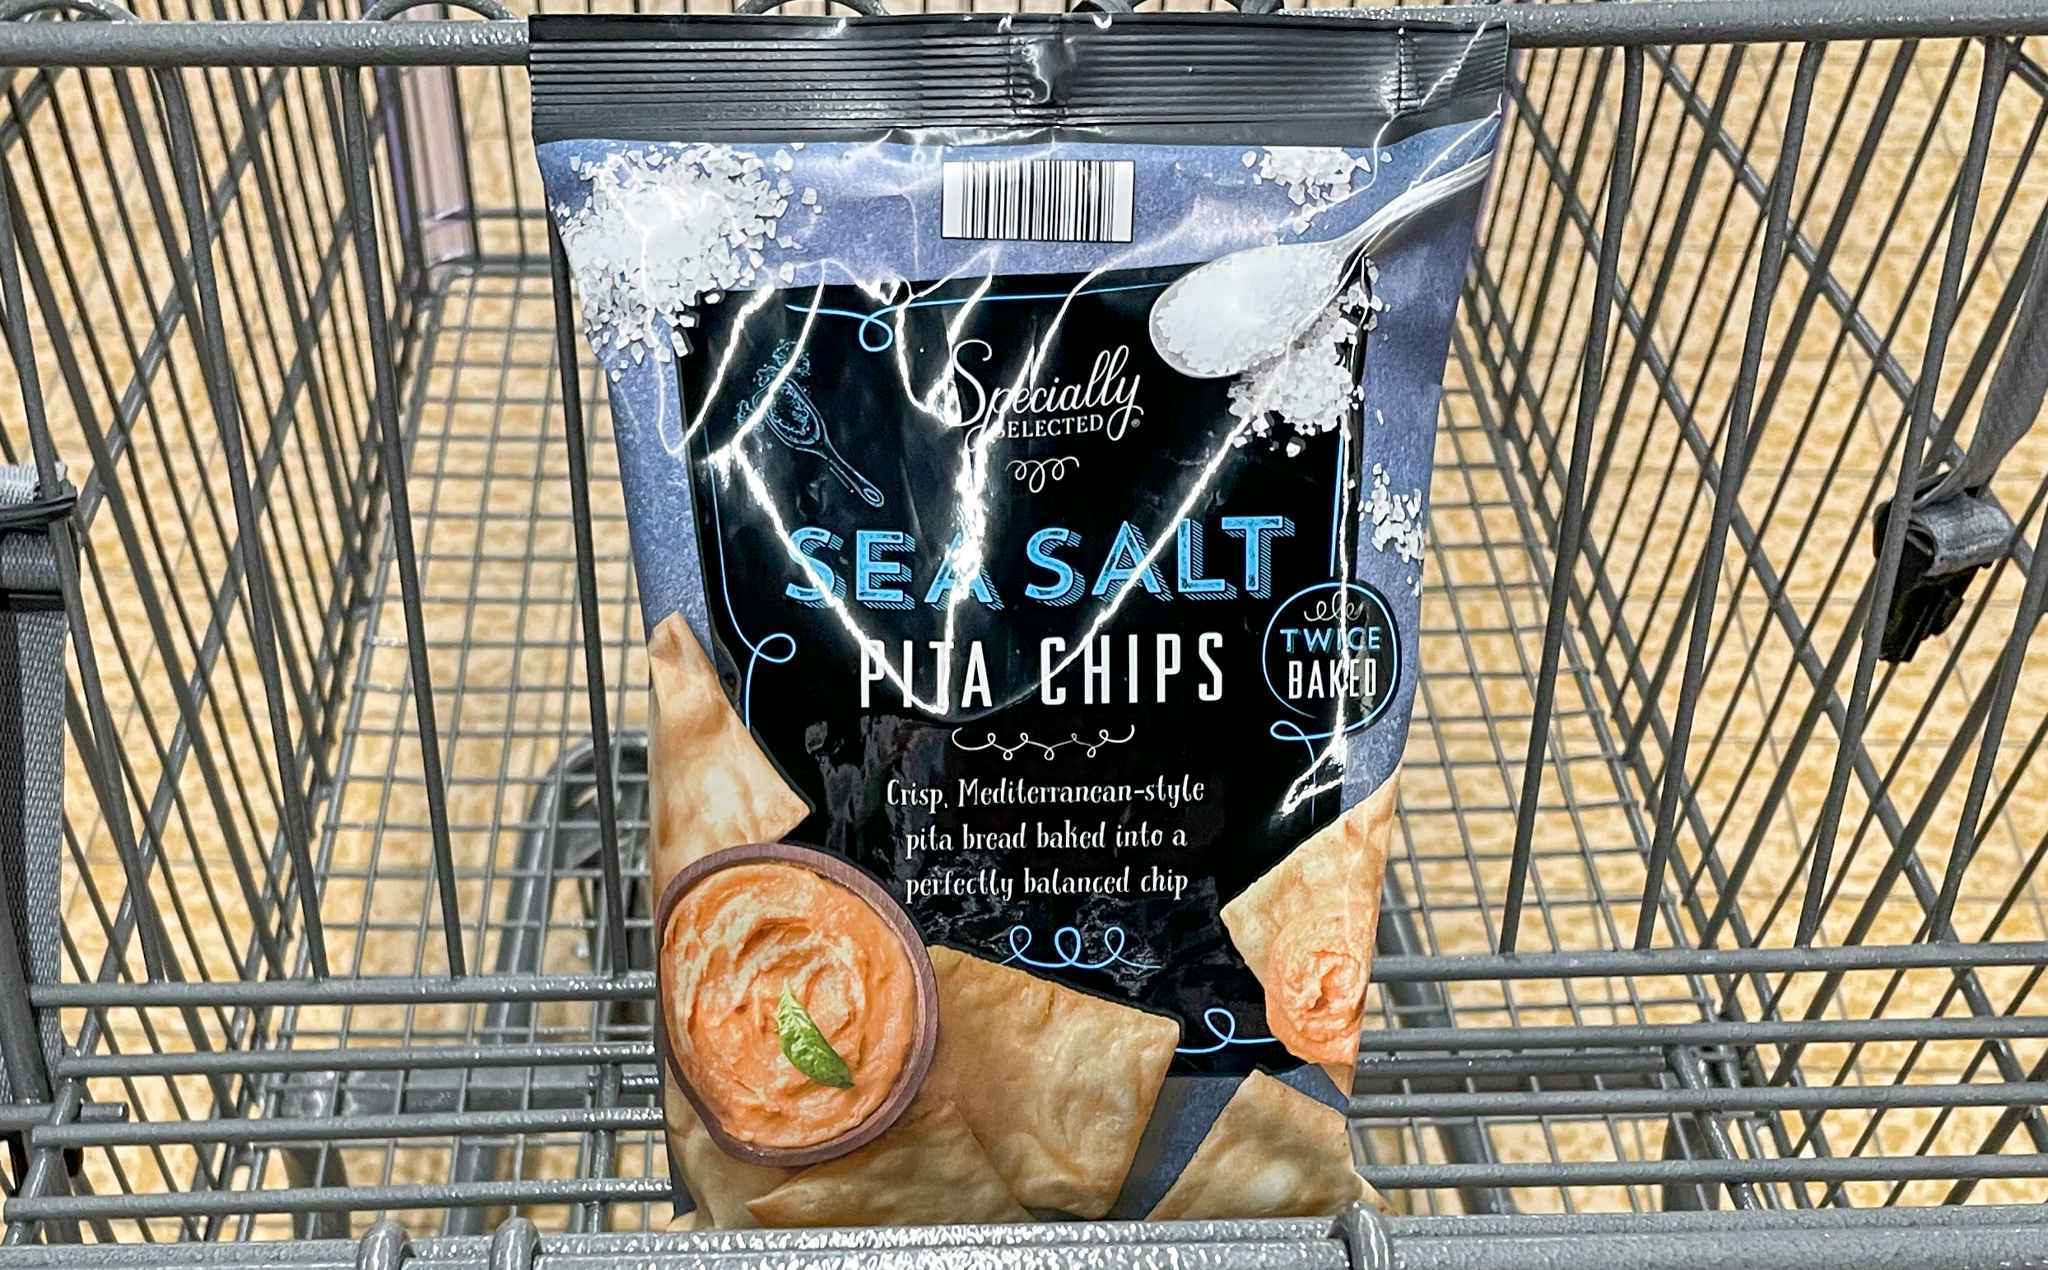 pita chips in a cart at aldi